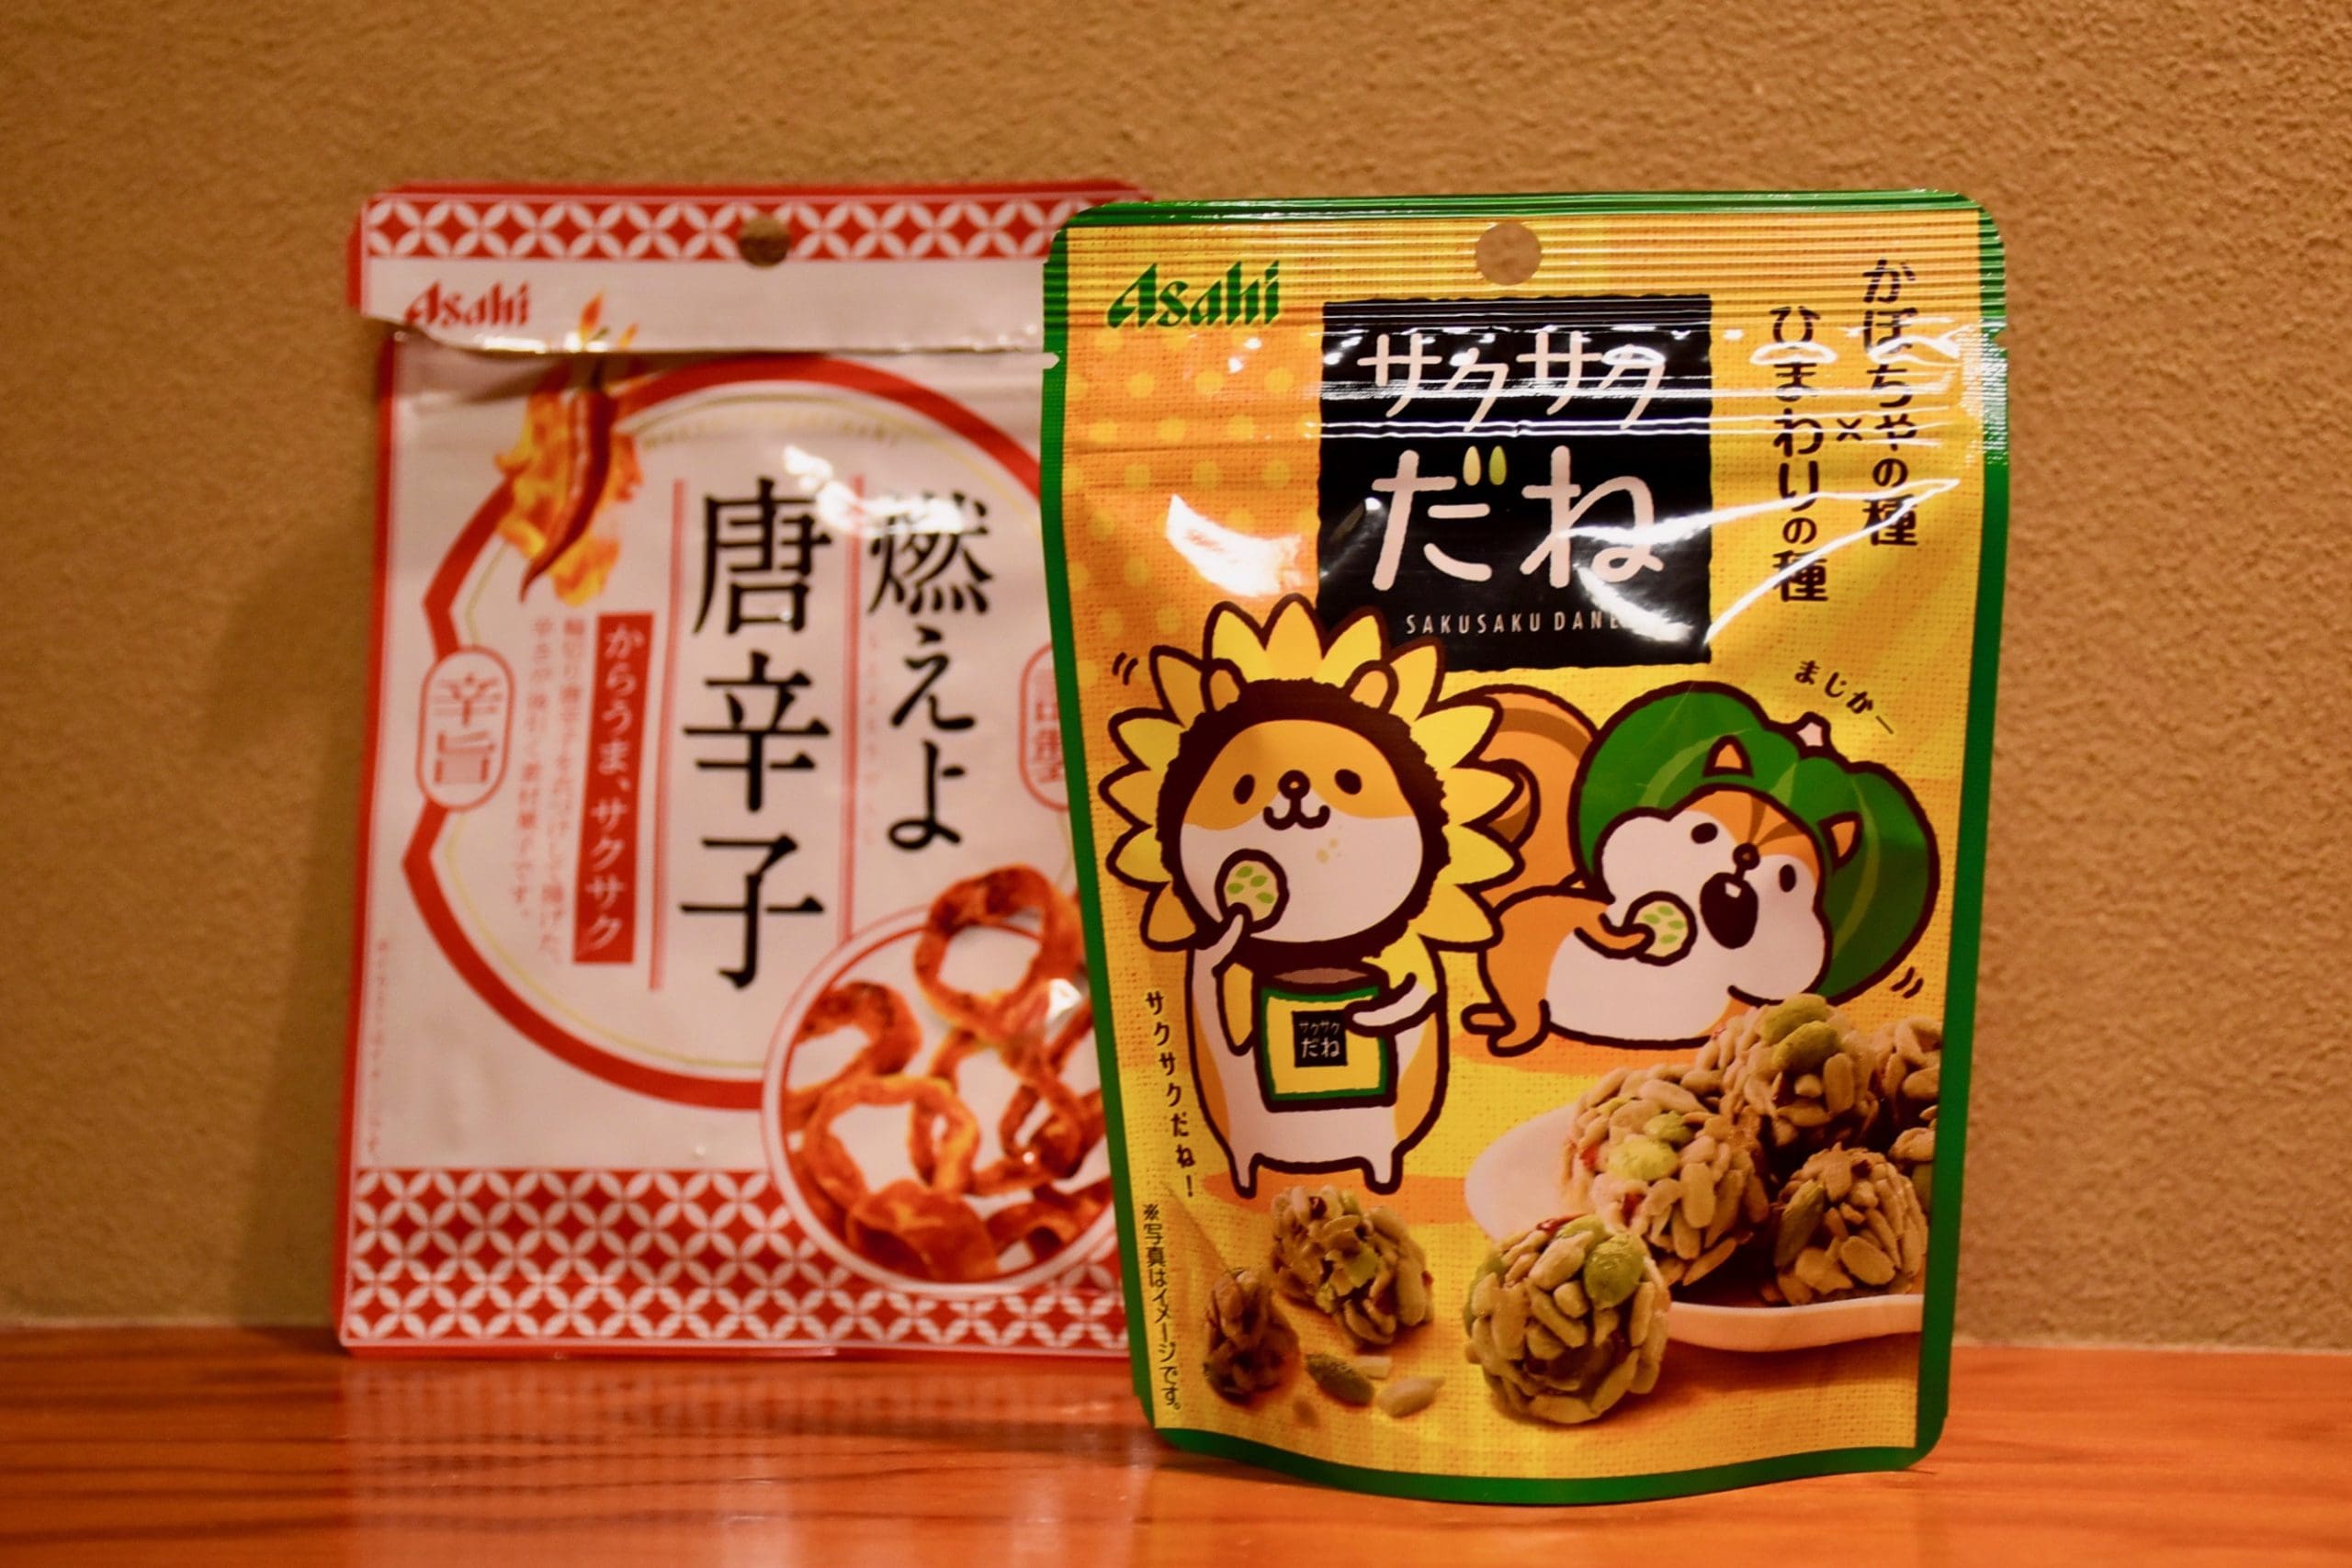 Takayama Gifu Japan Convenience Store Snacks